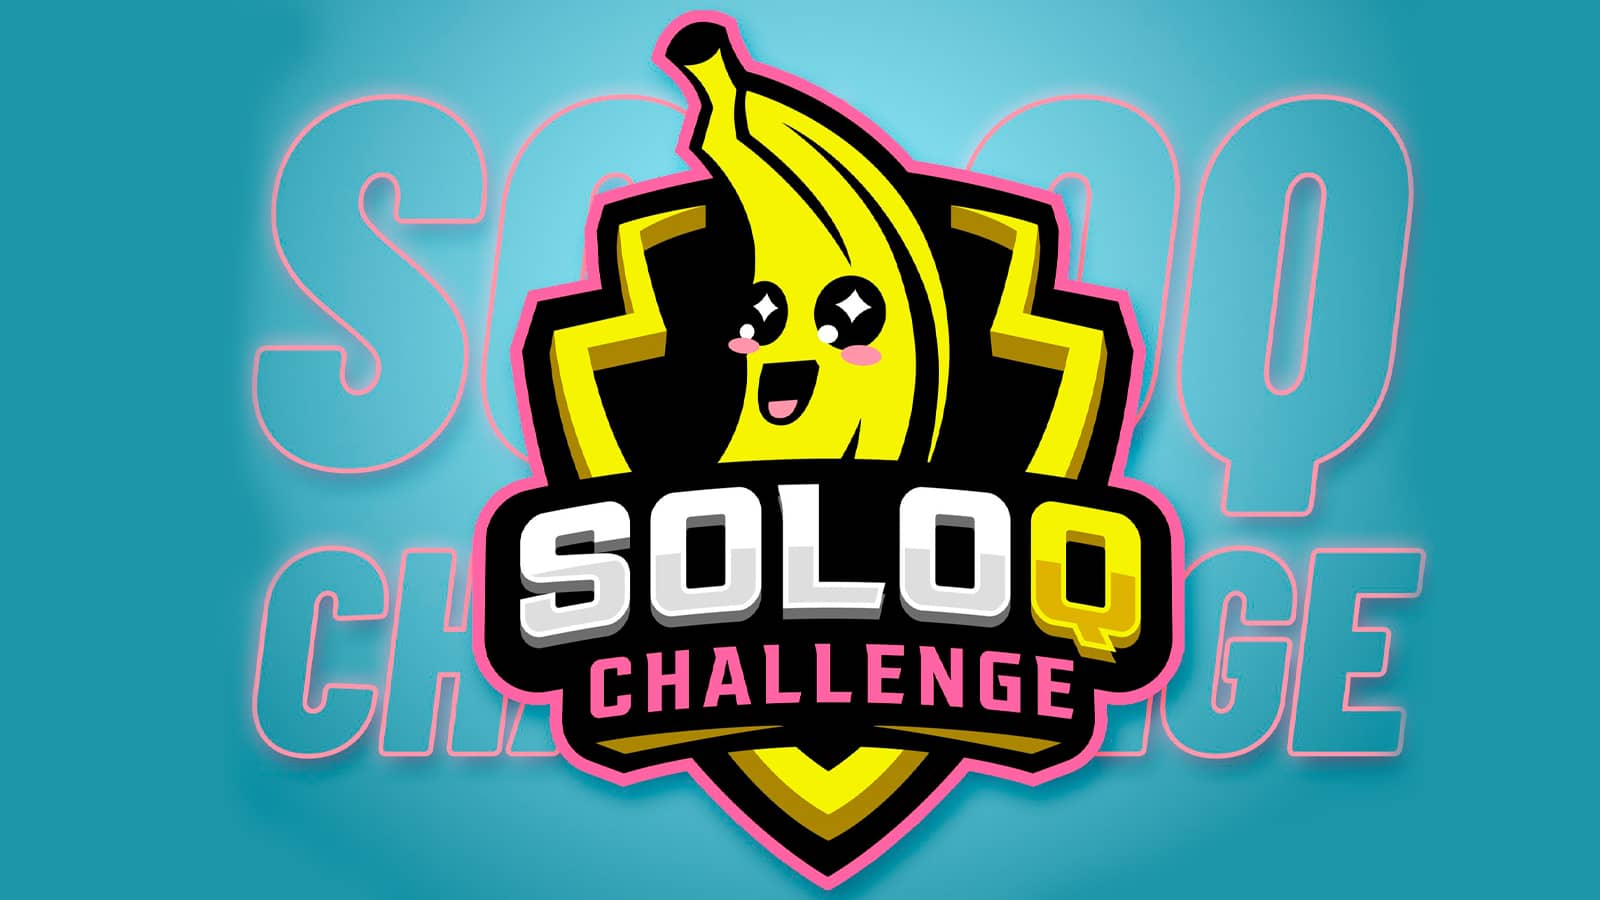 soloq Challenge elmillor